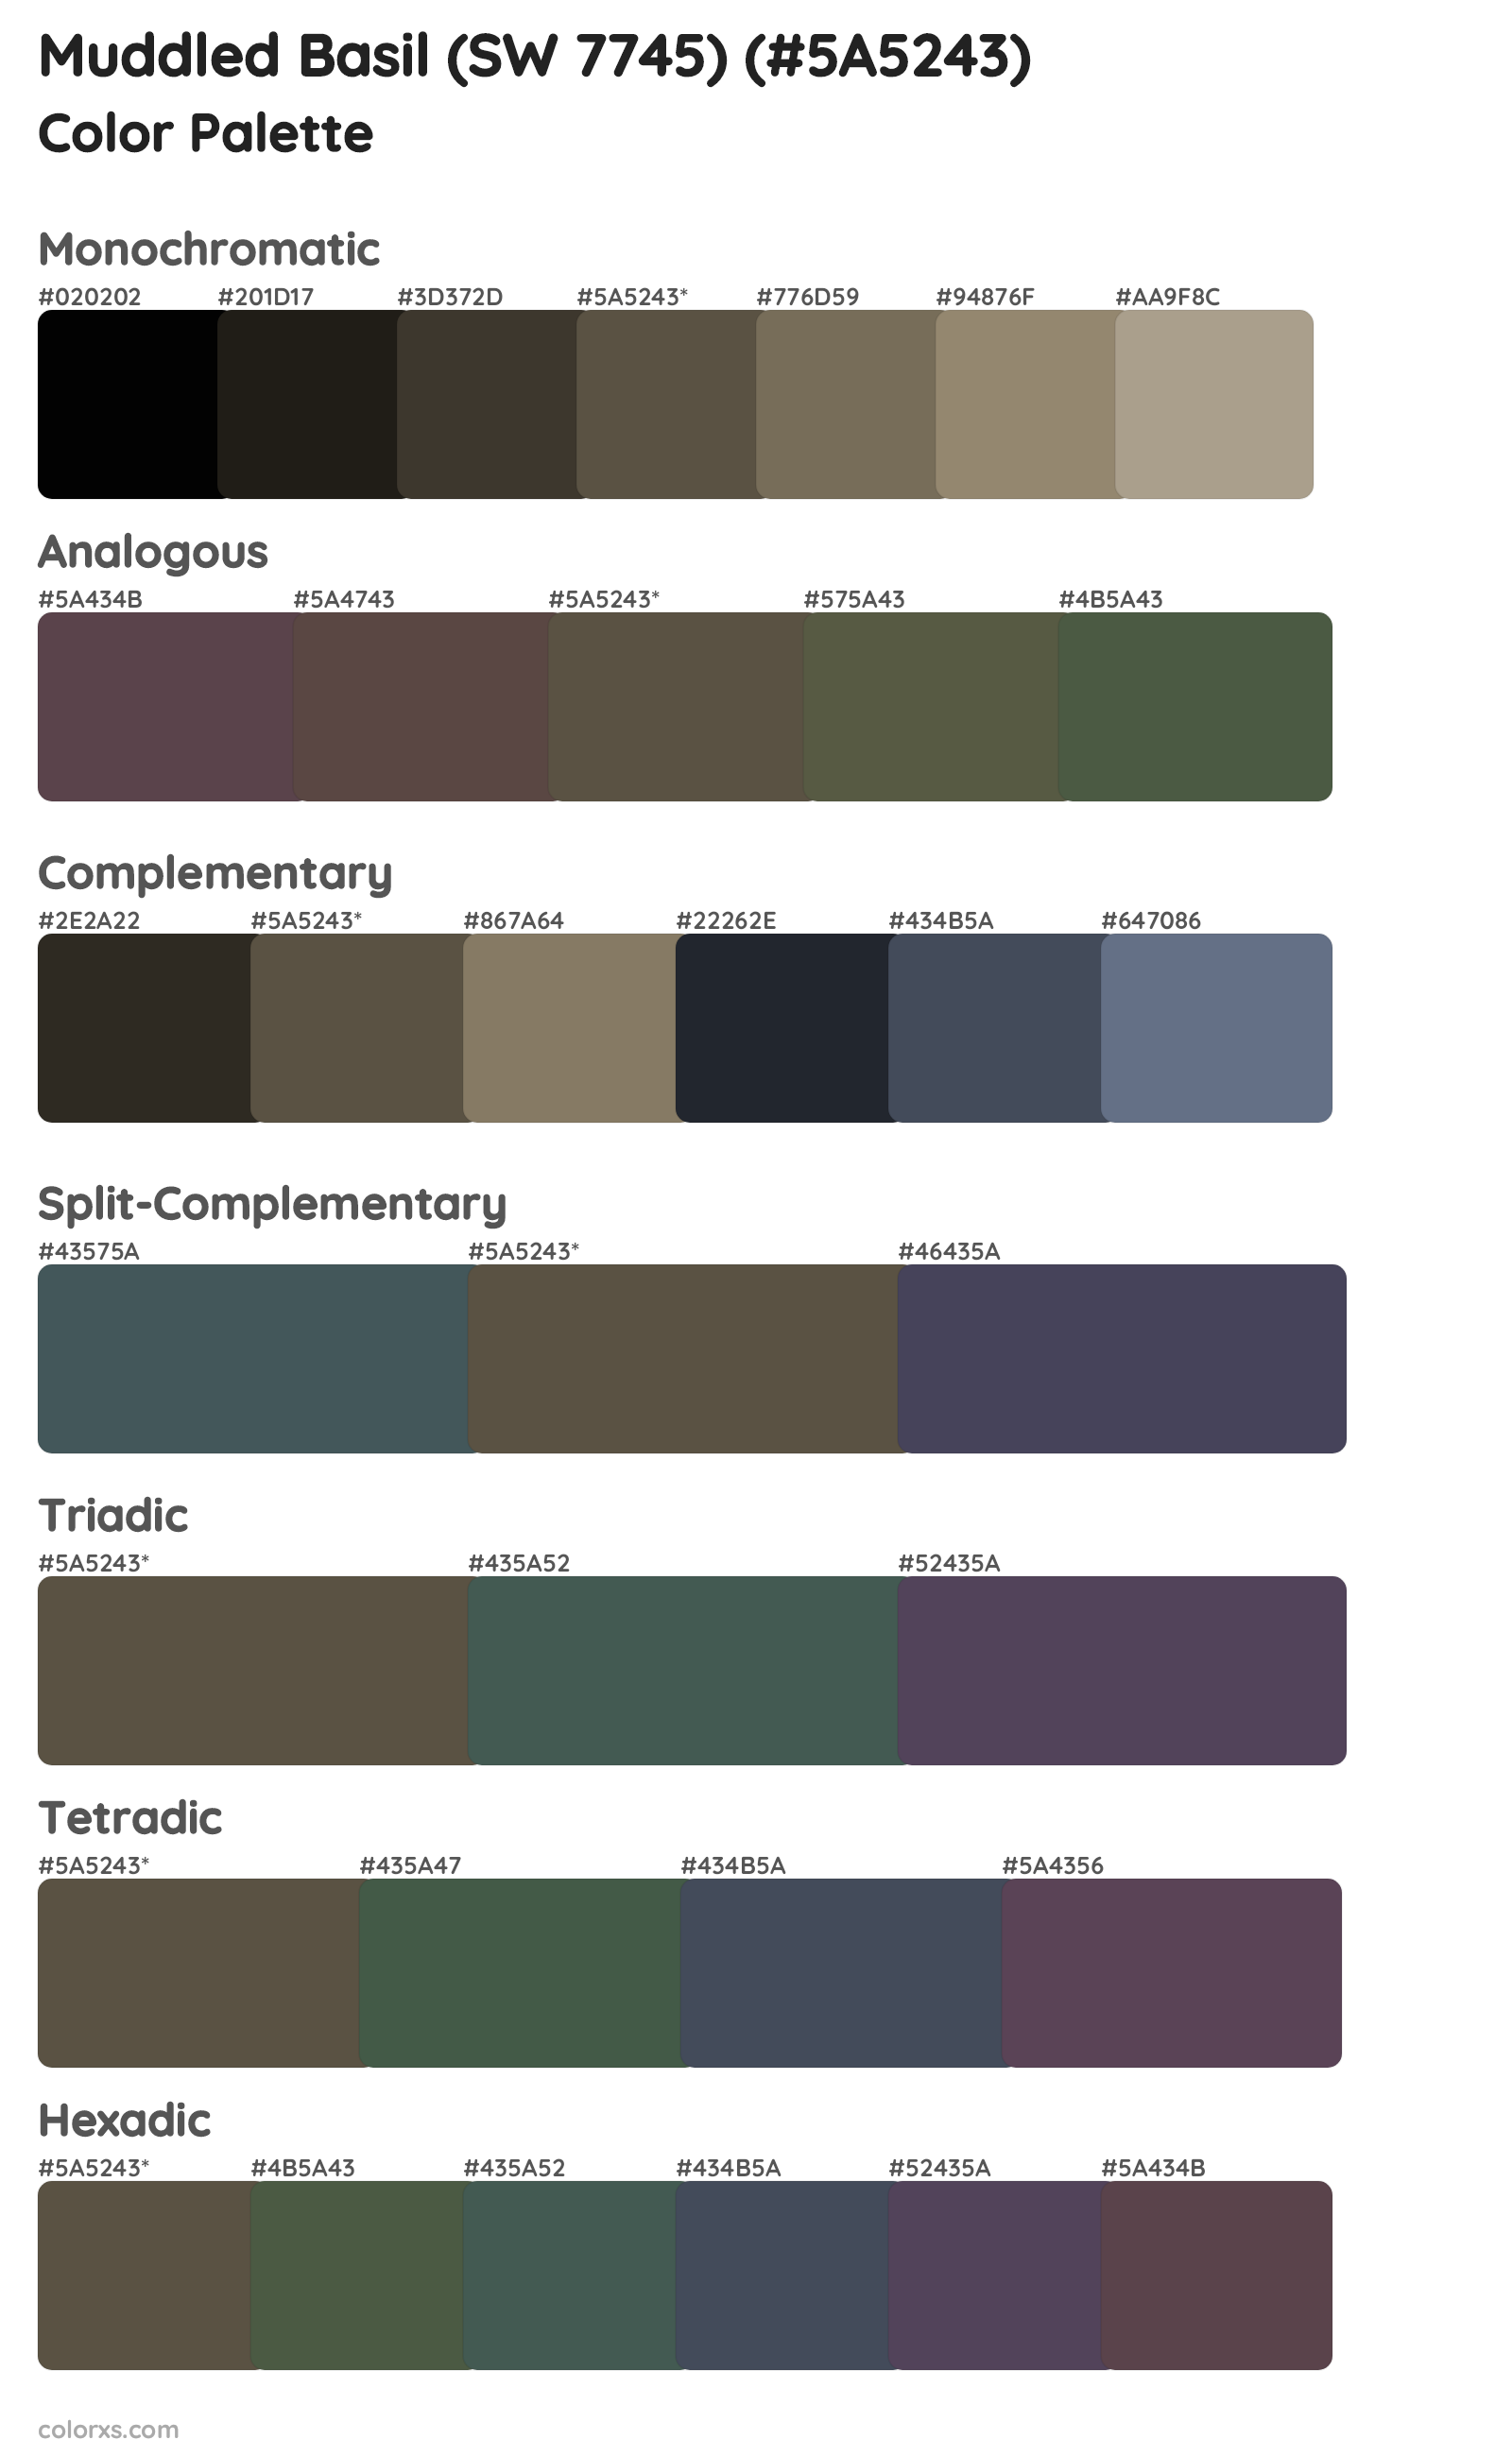 Muddled Basil (SW 7745) Color Scheme Palettes